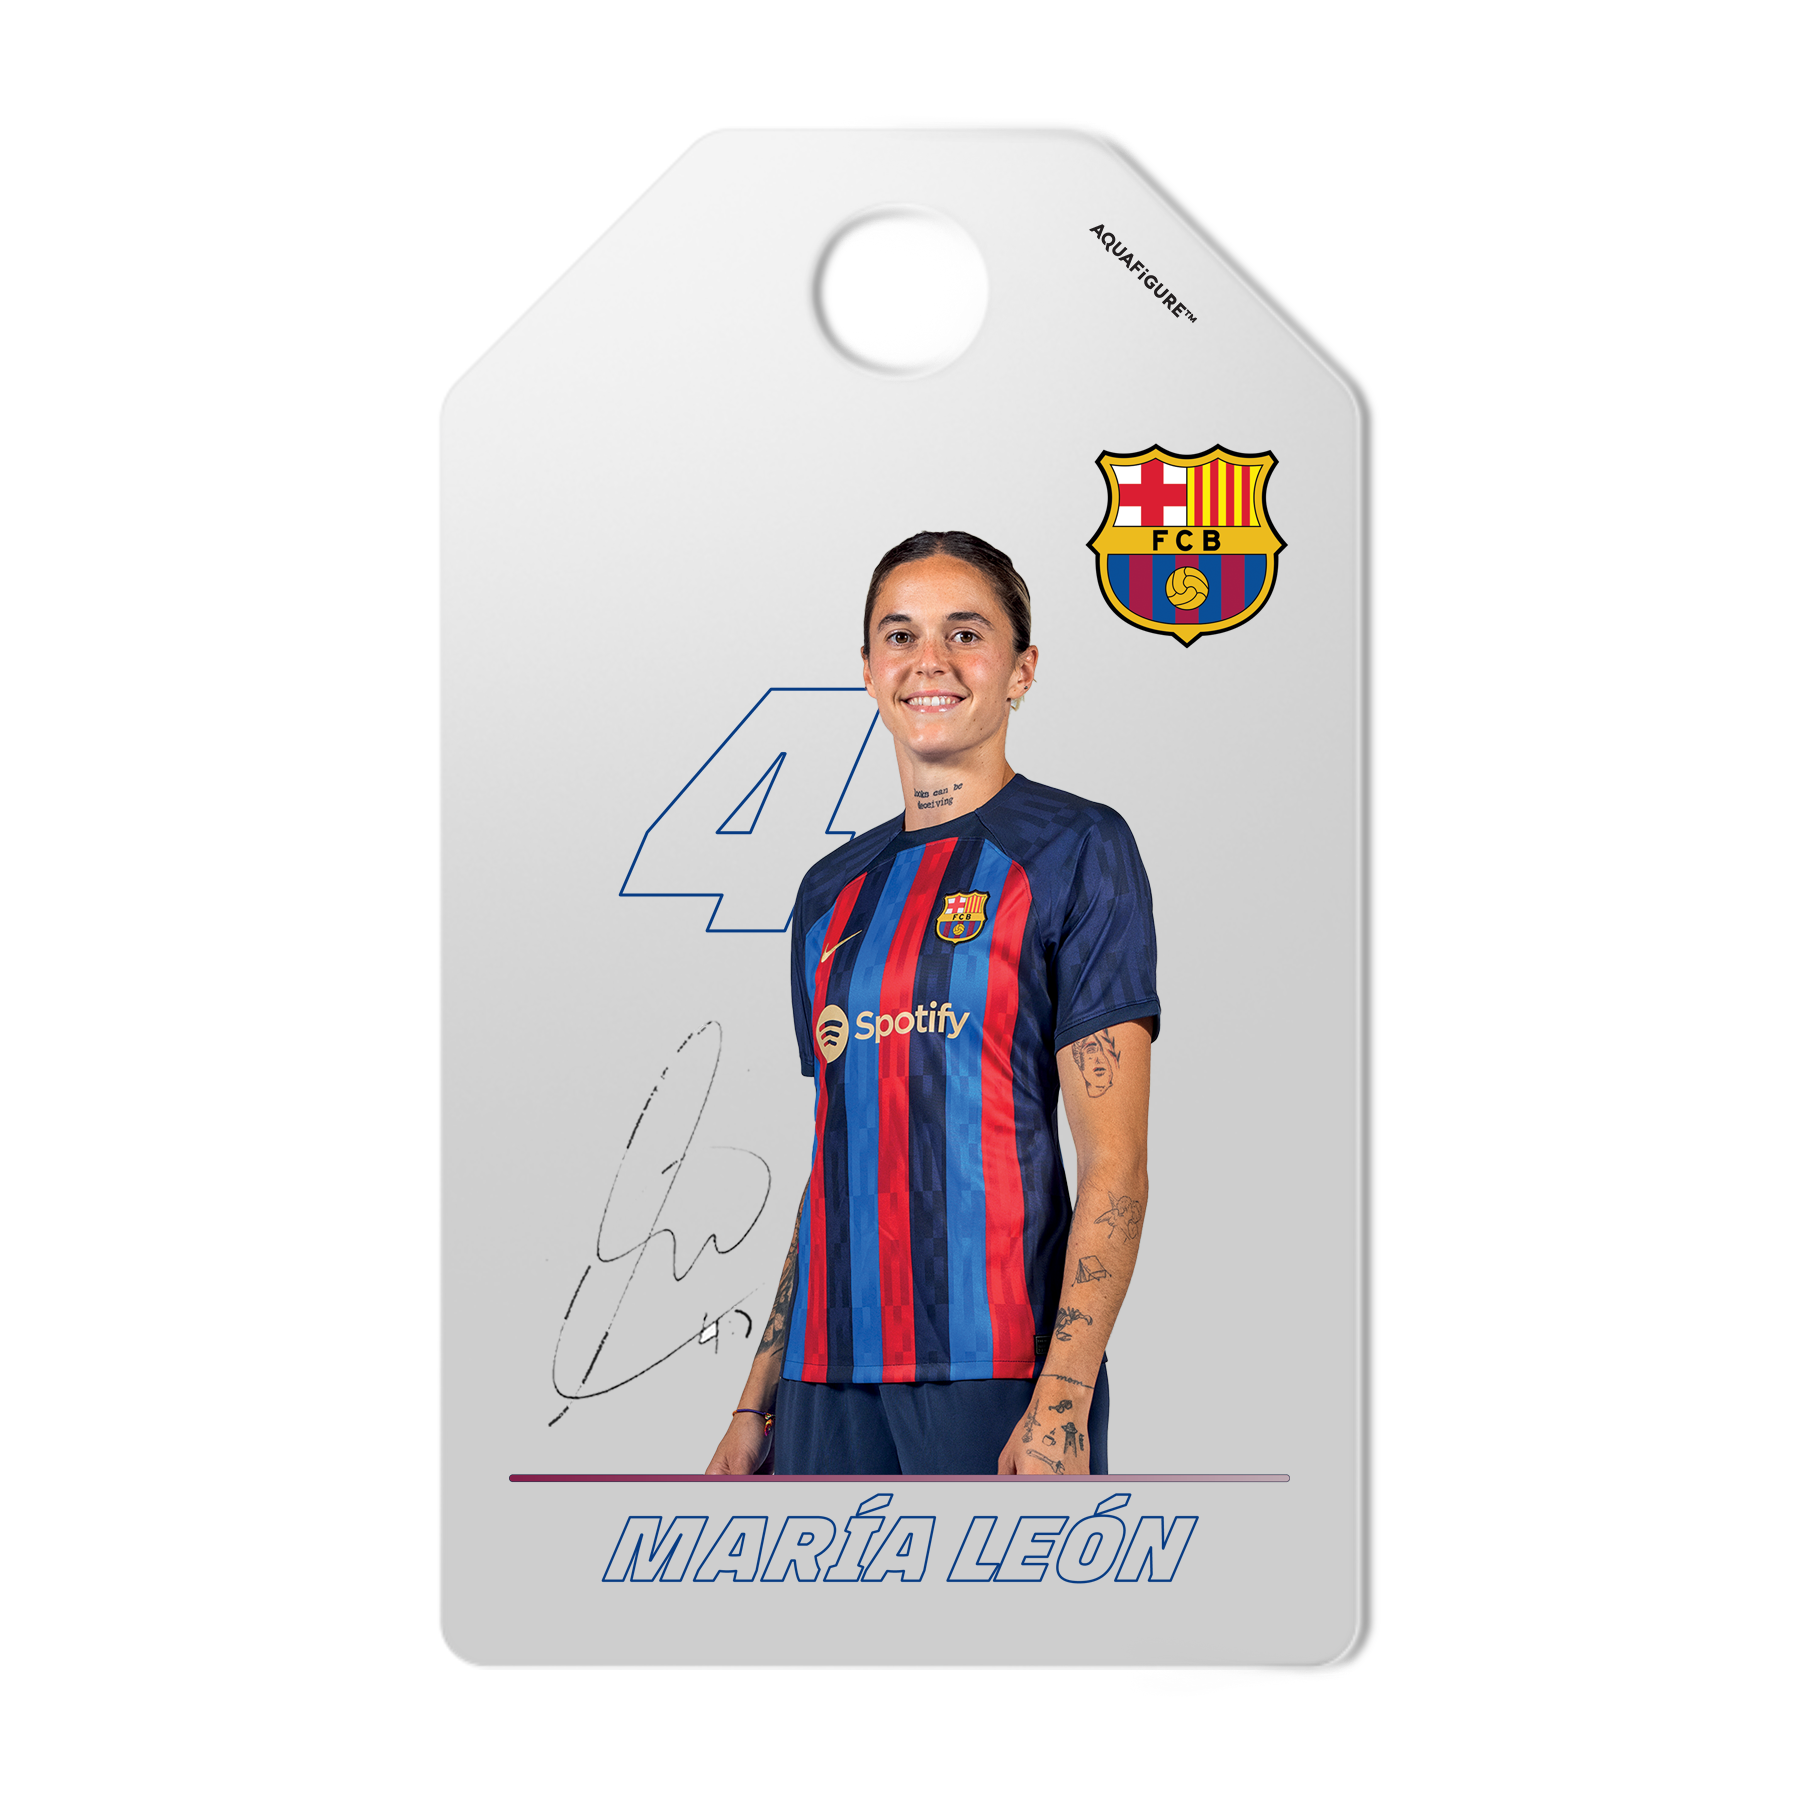 Damenmannschaft des FC Barcelona - Aquafigure Flasche mit 6 Tags